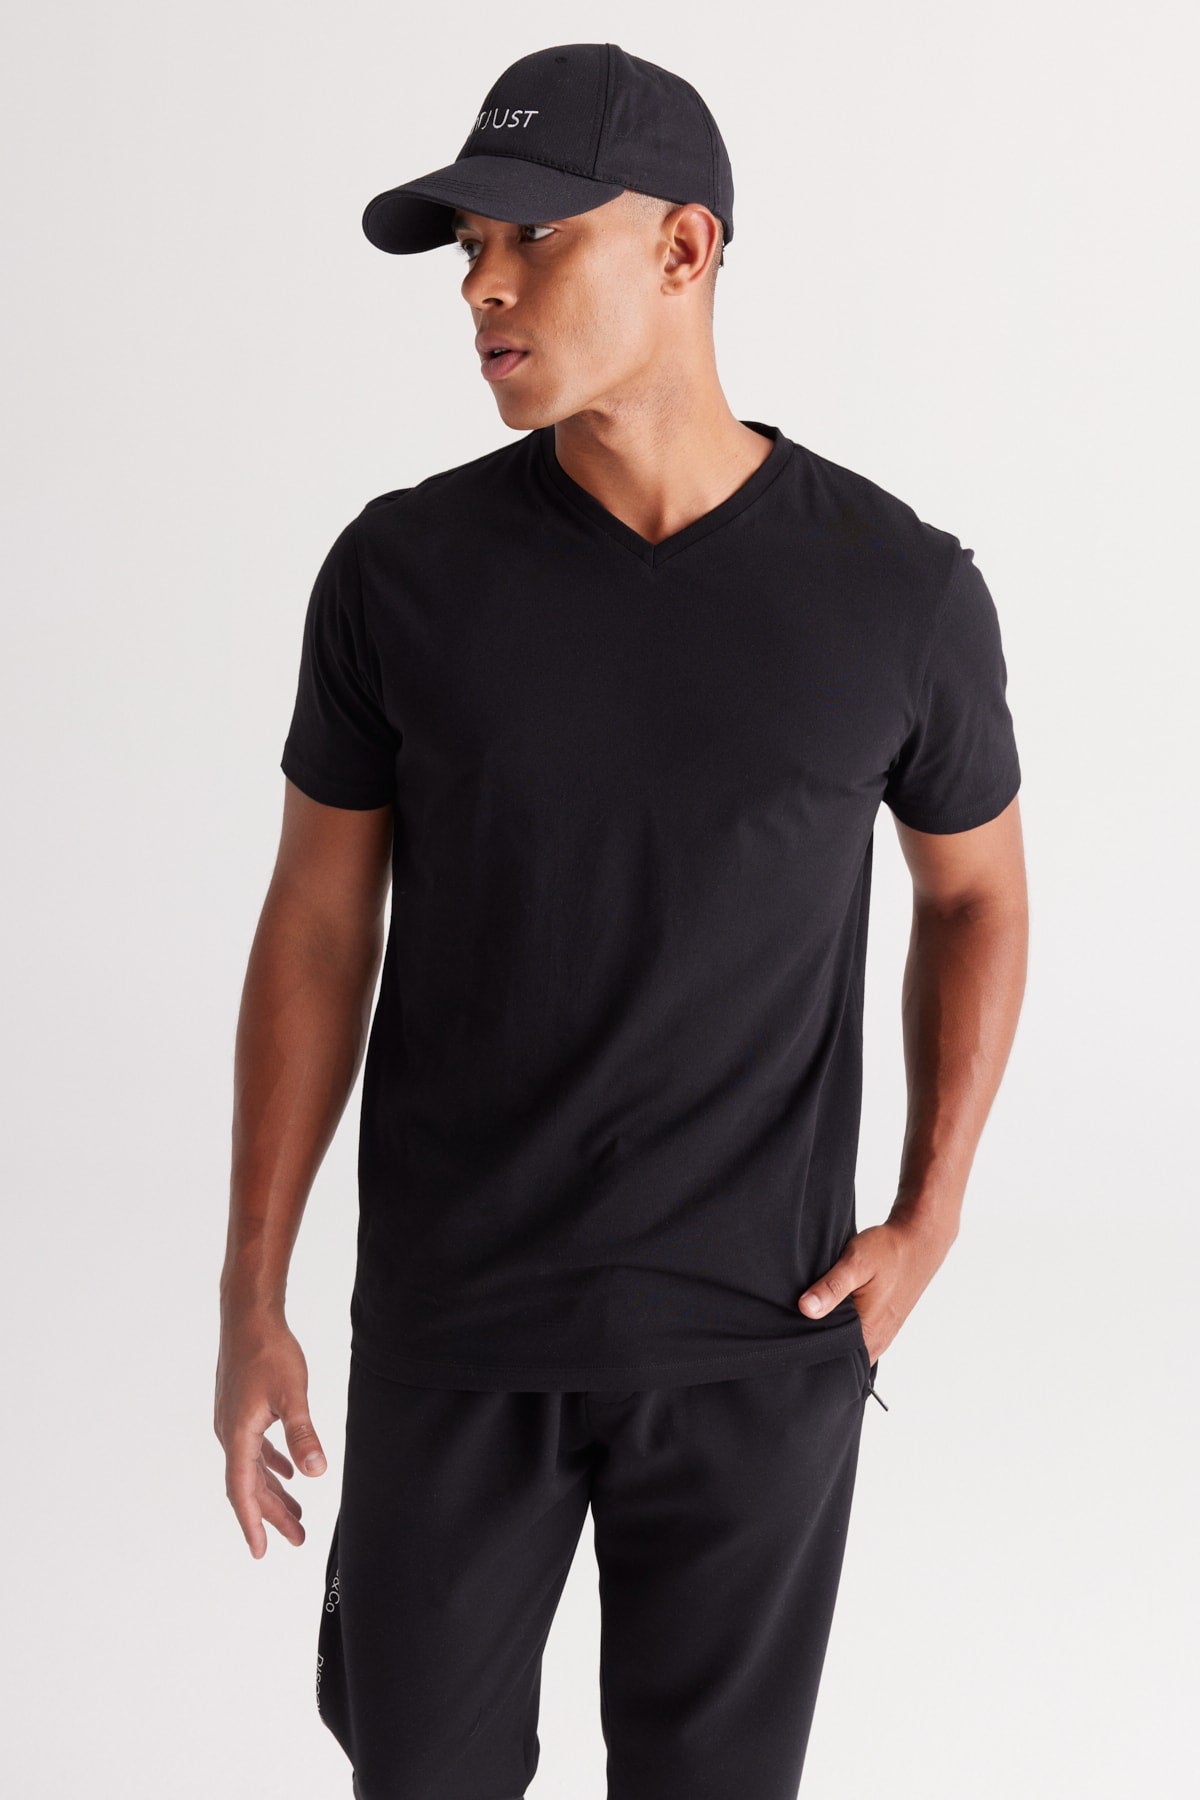 Men's Black 100% Cotton Slim Fit Slim Fit V-Neck Short Sleeved T-Shirt